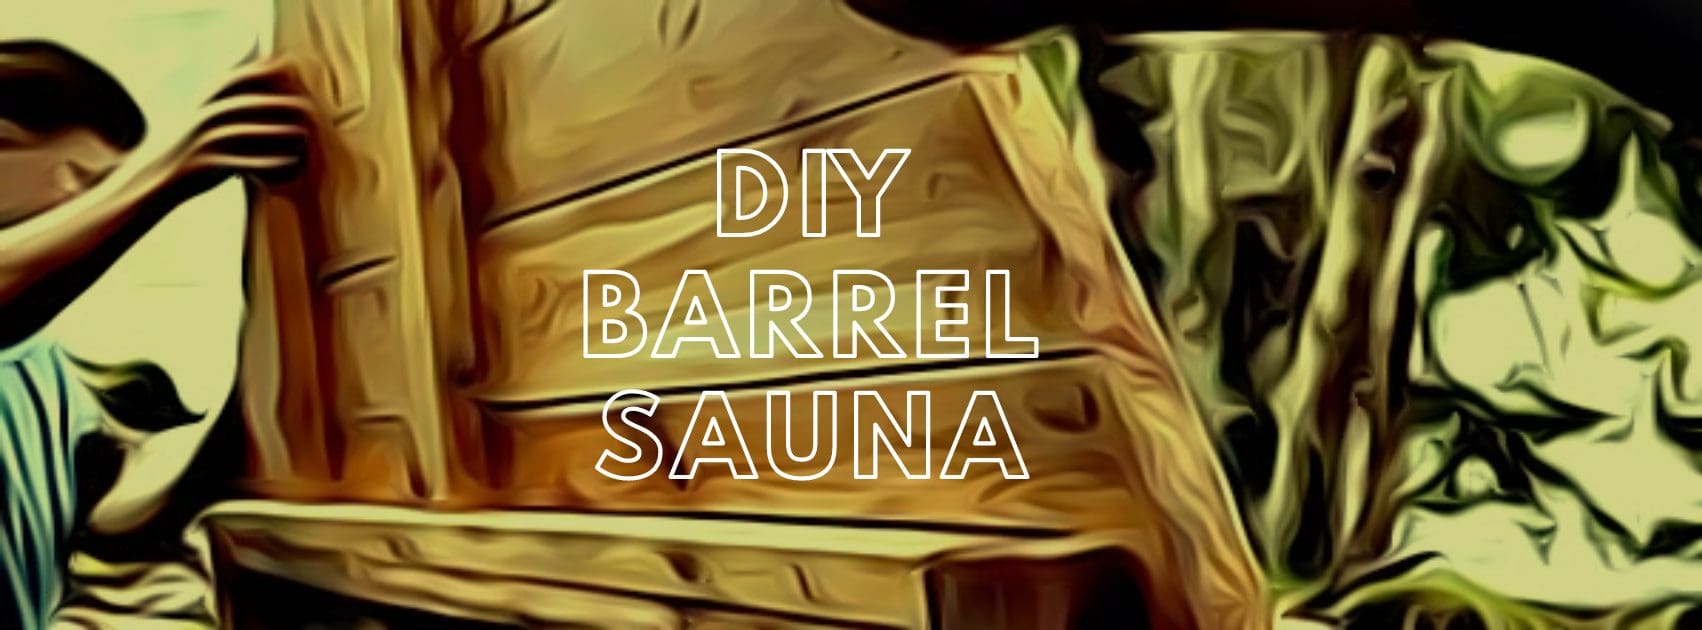 DIY BARREL SAUNA